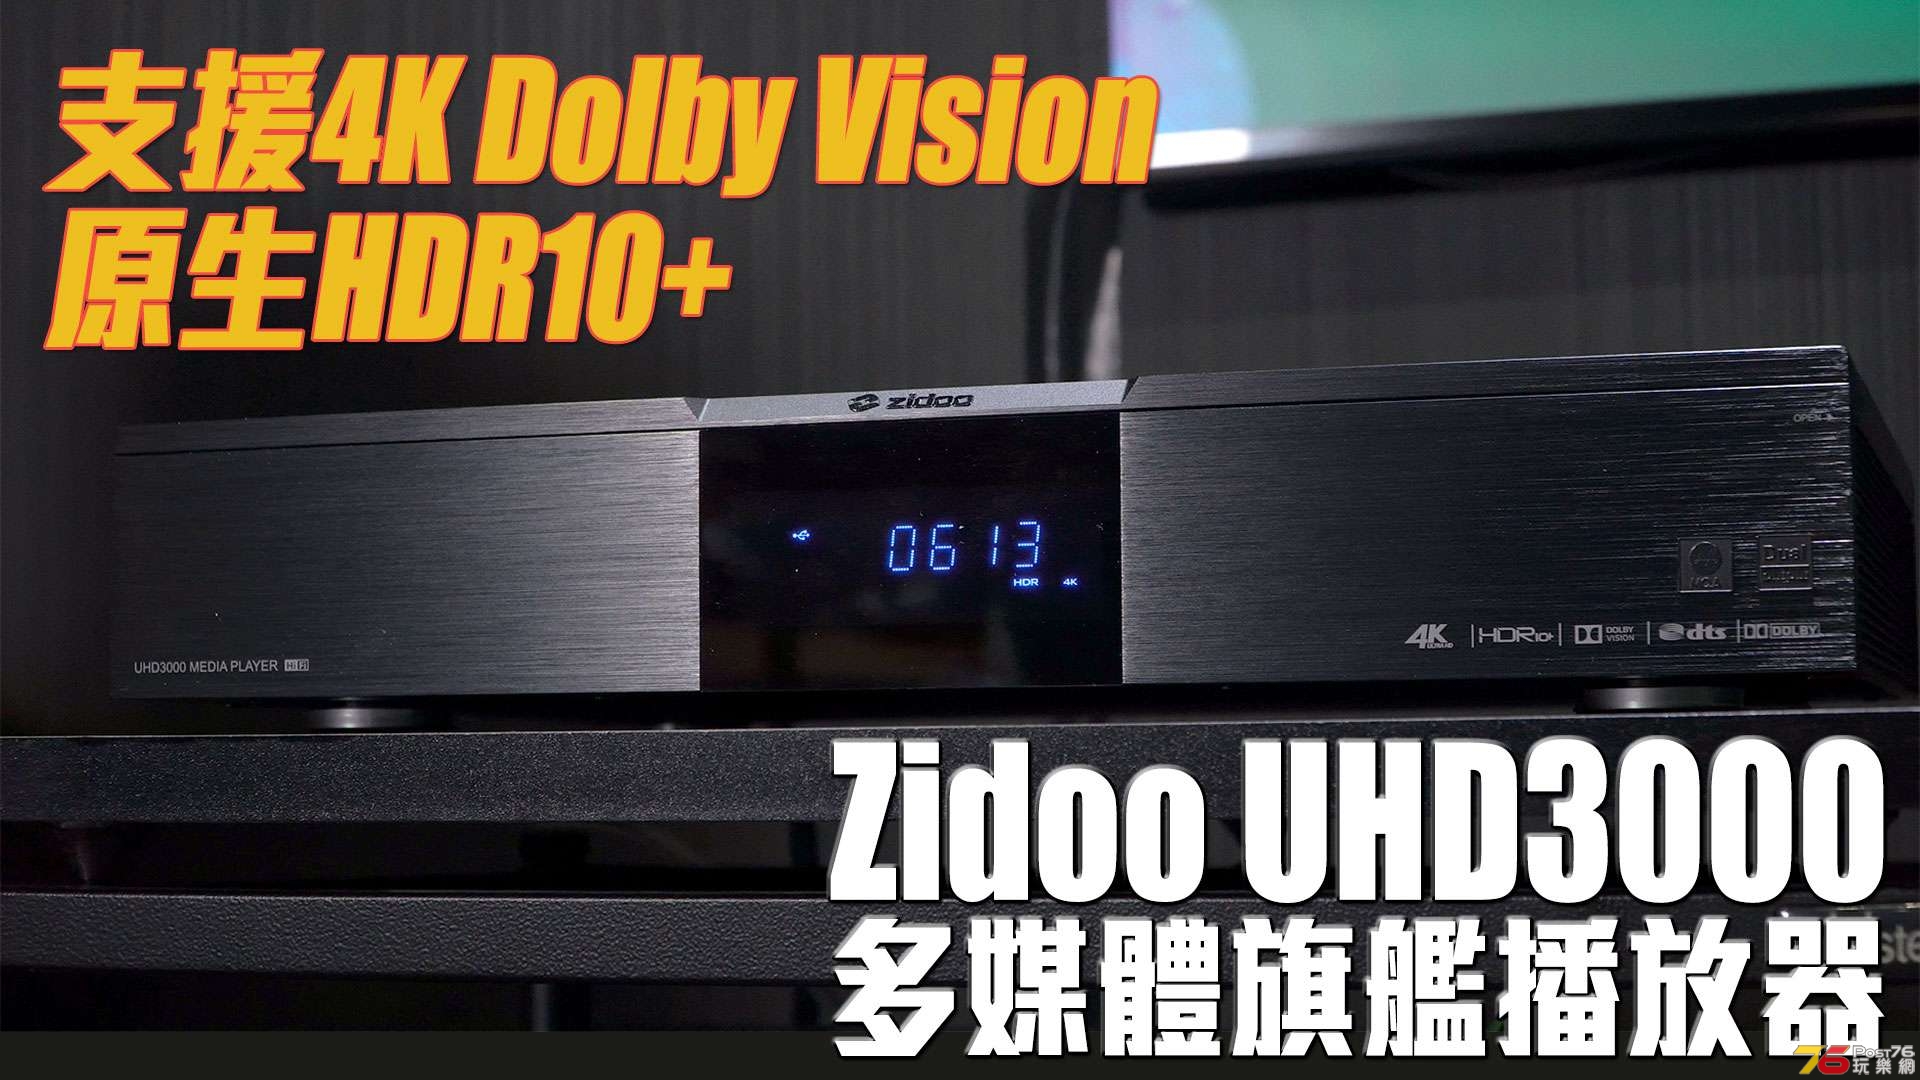 zidoo-uhd3000-review-forum.jpg